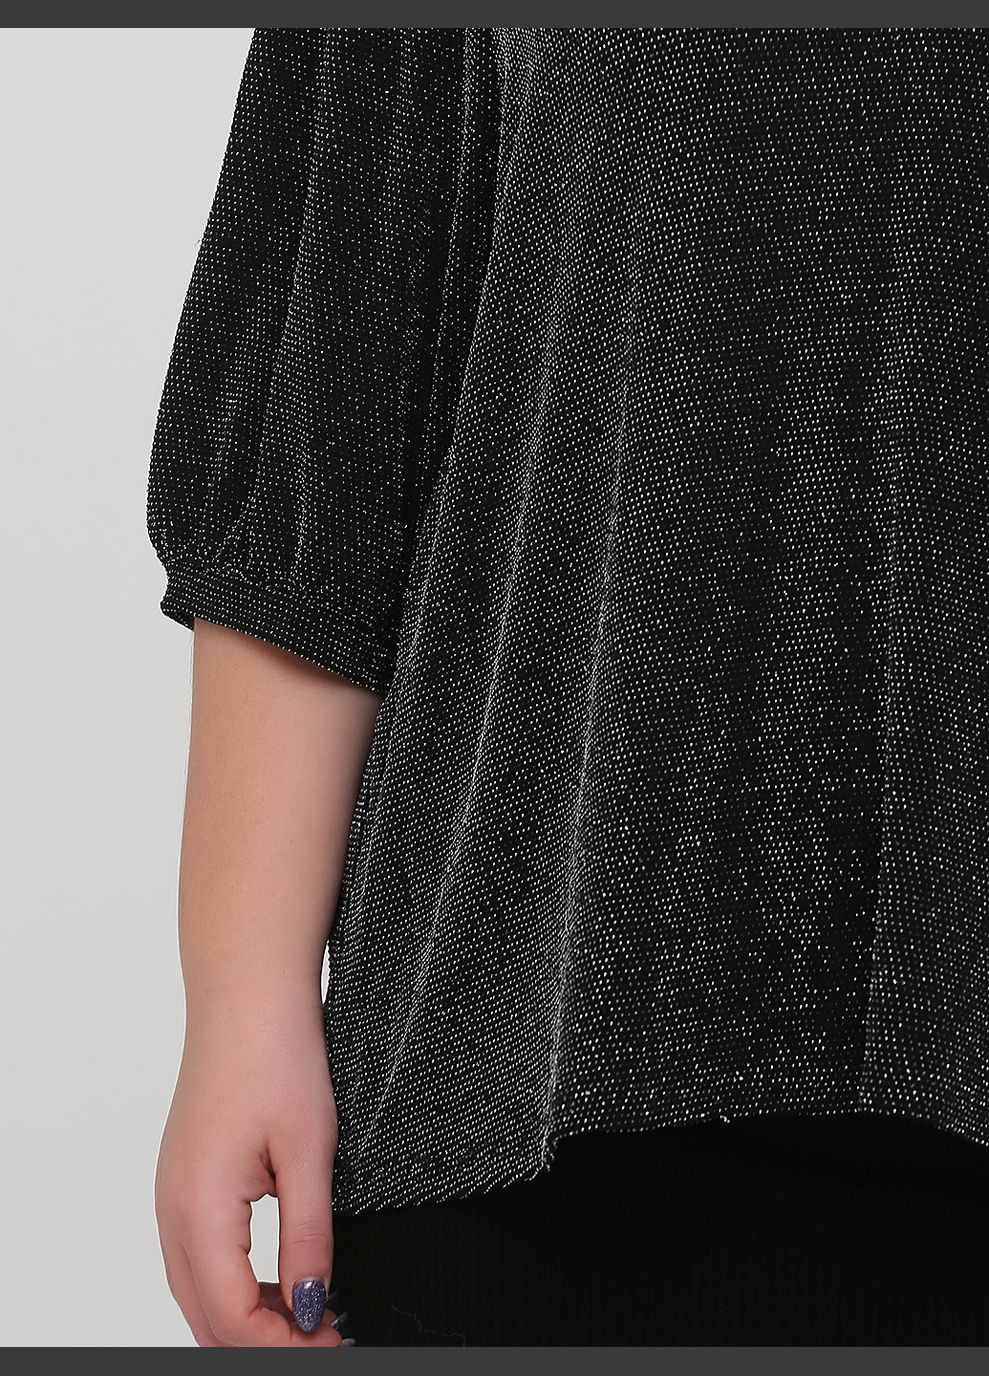 Черная демисезонная блузка из блестящего трикотажа для женщины 0926841 H&M